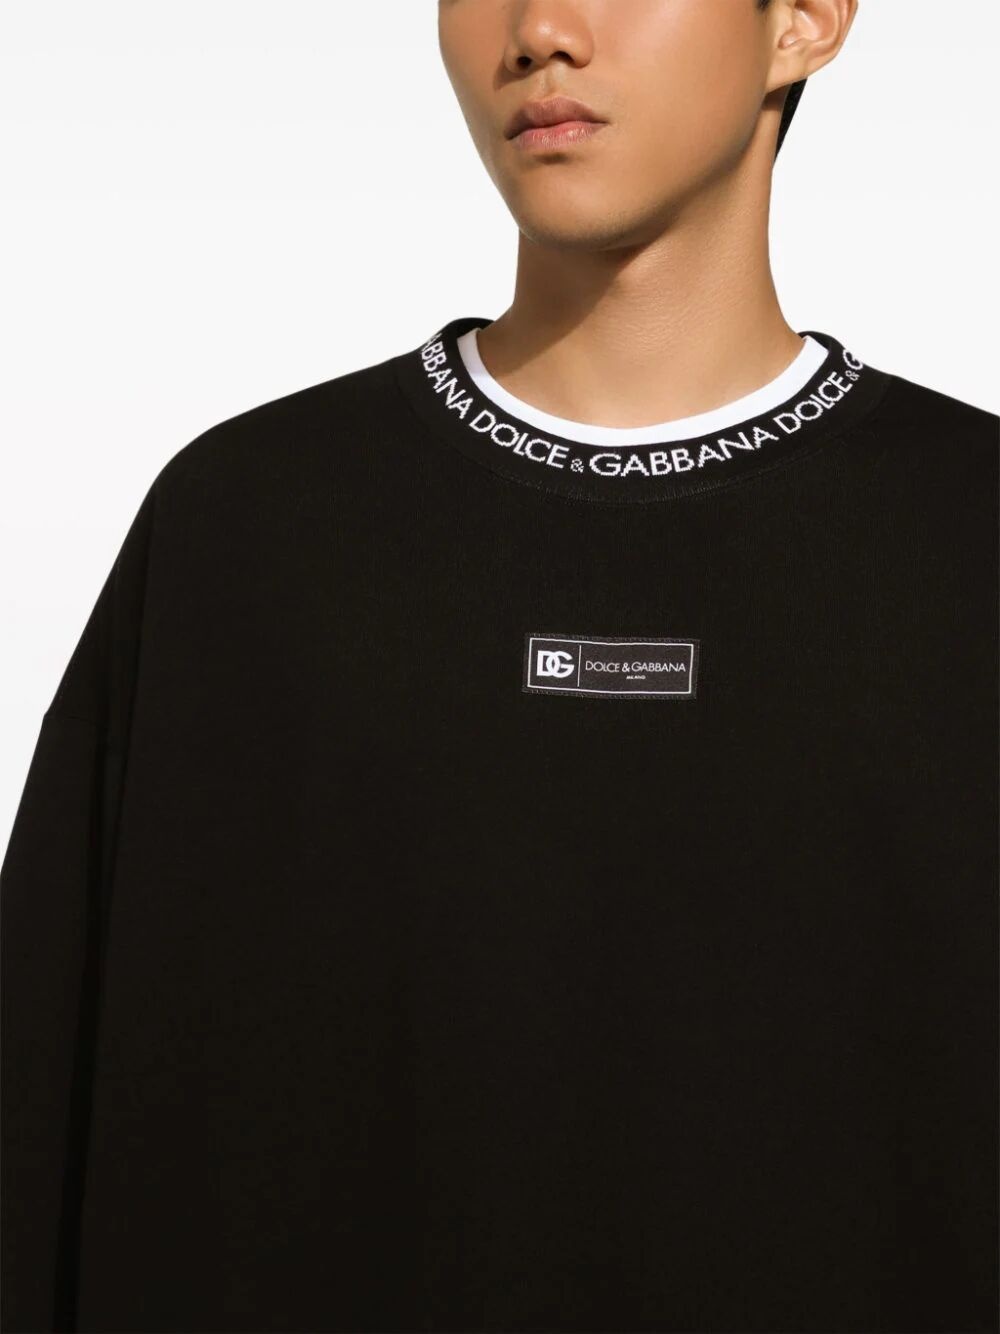 Round-neck sweatshirt with dolce&gabbana logo - 5